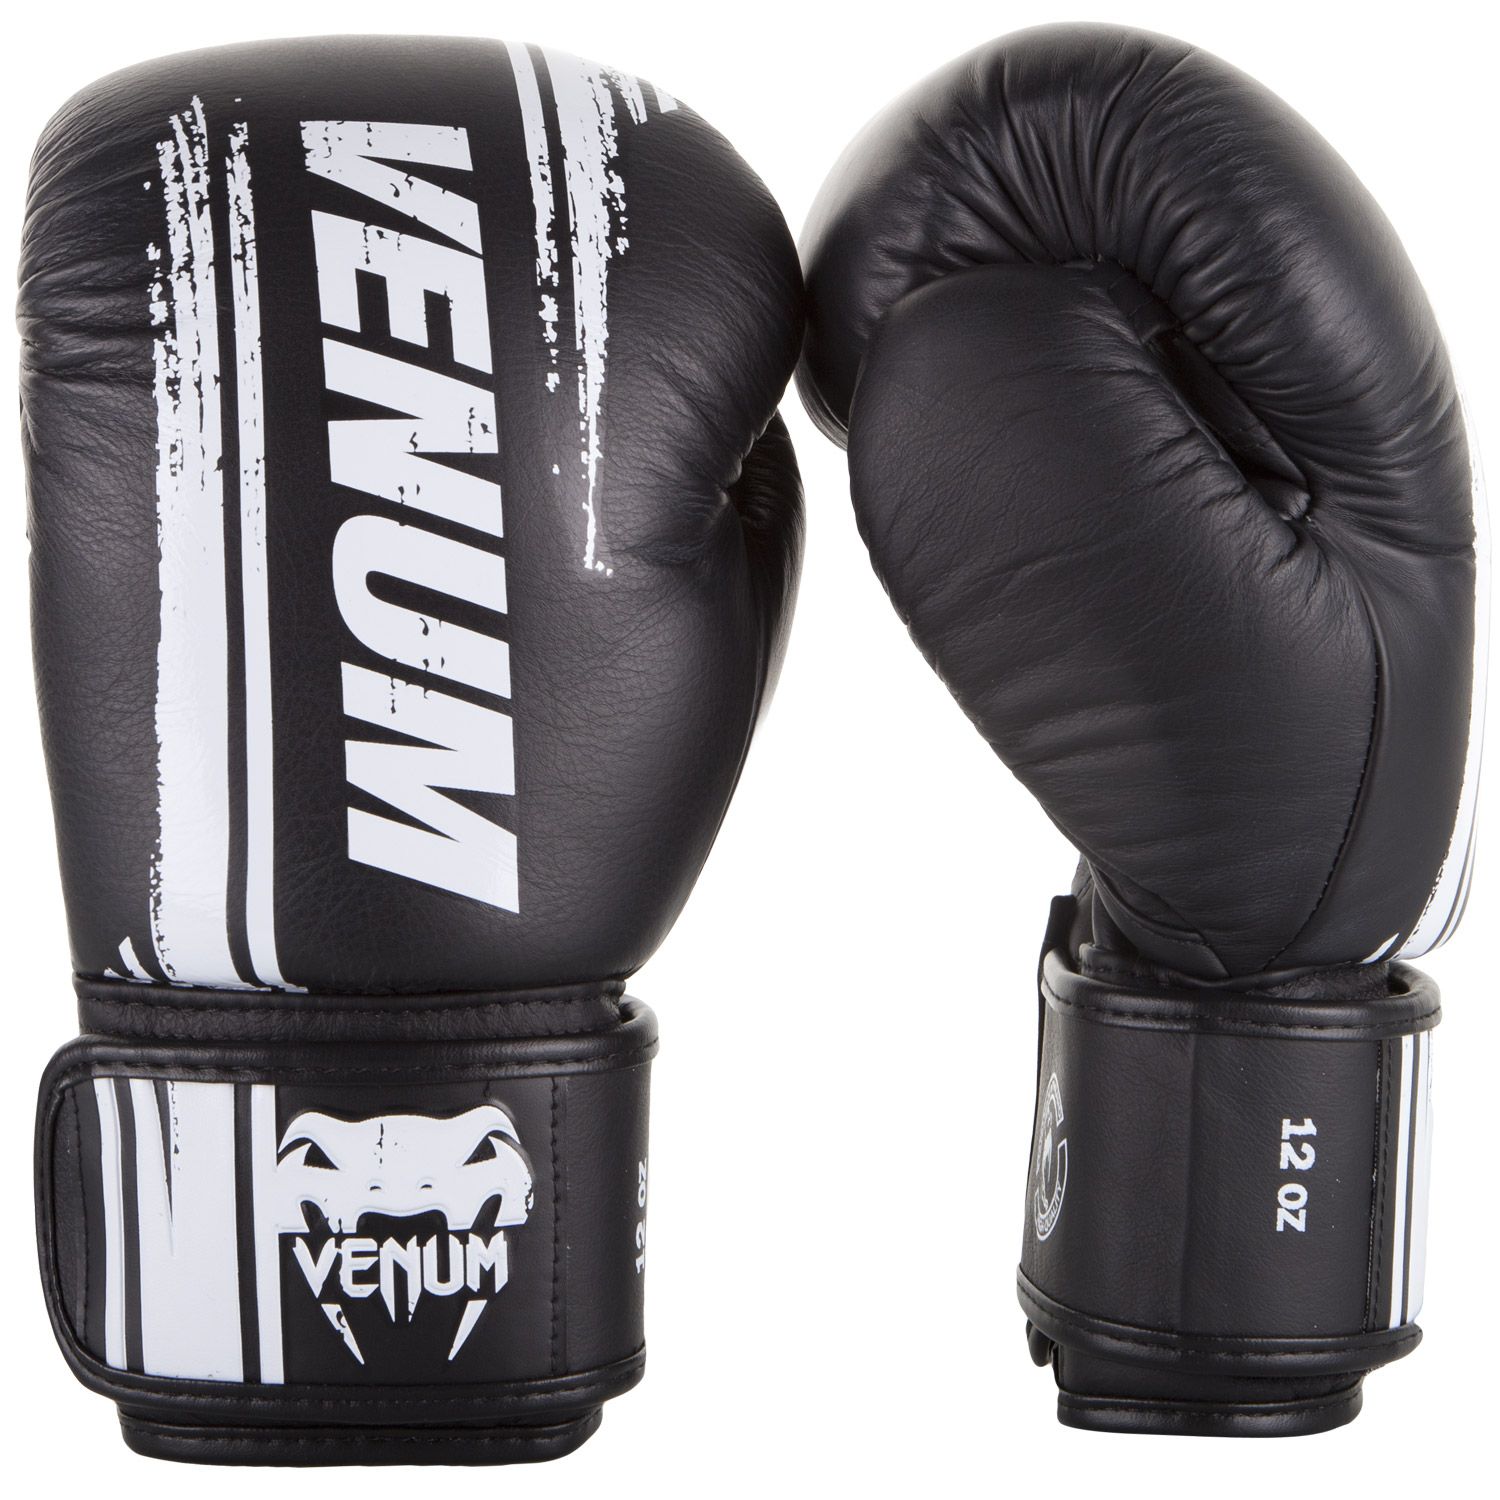 Boxerské rukavice Bangkok Spirit - kůže Nappa černé VENUM vel. 16 oz